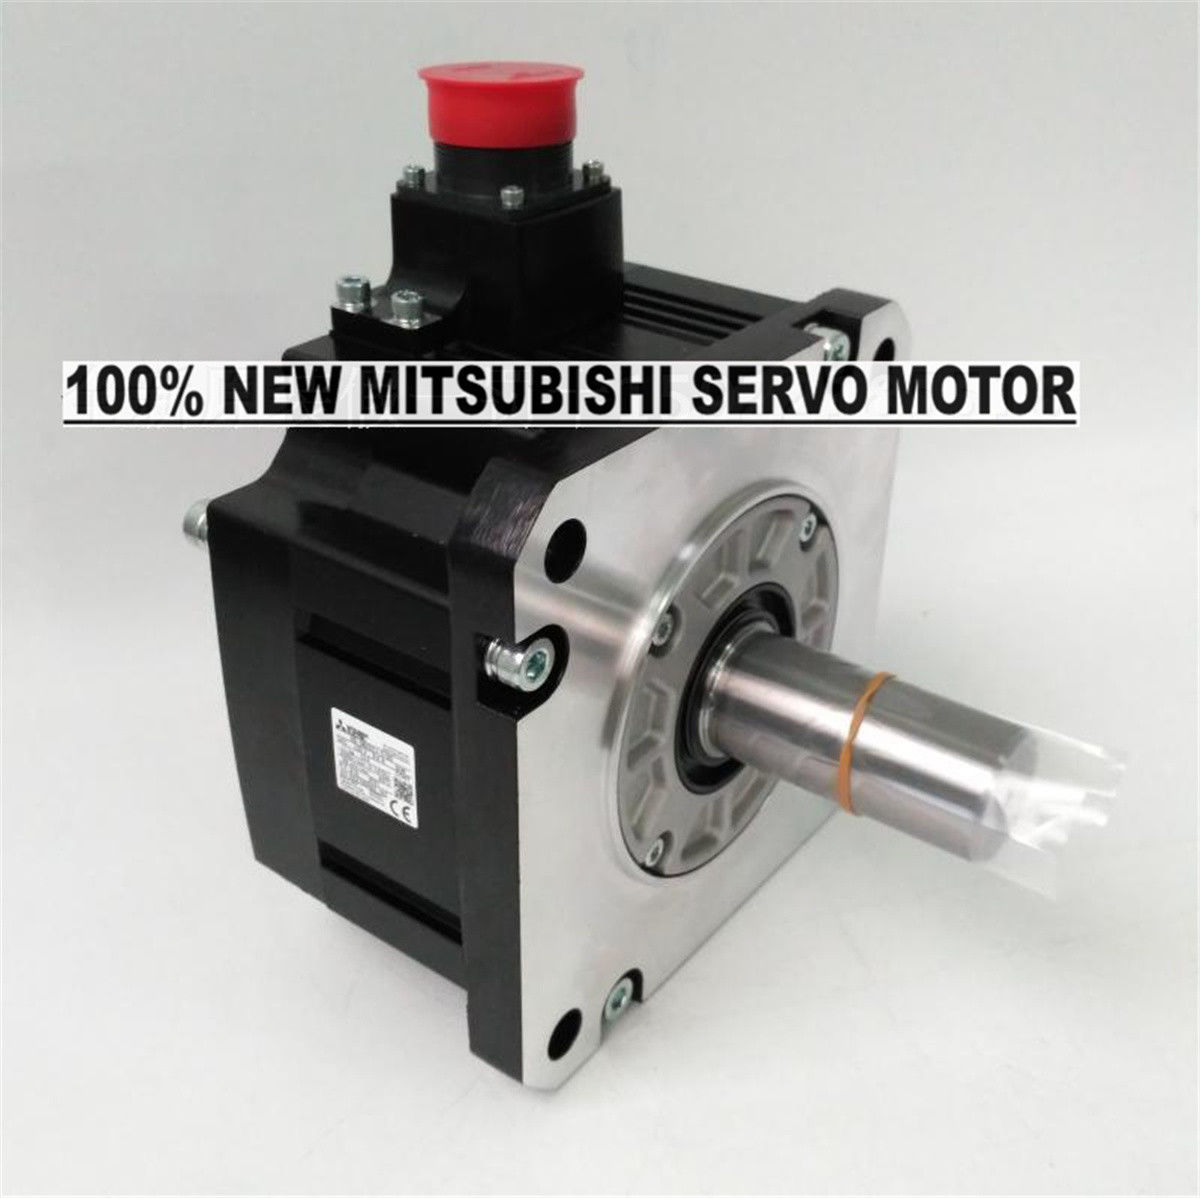 Brand NEW Mitsubishi Servo Motor HG-SN202J-S100 in box HGSN202JS100 - Click Image to Close